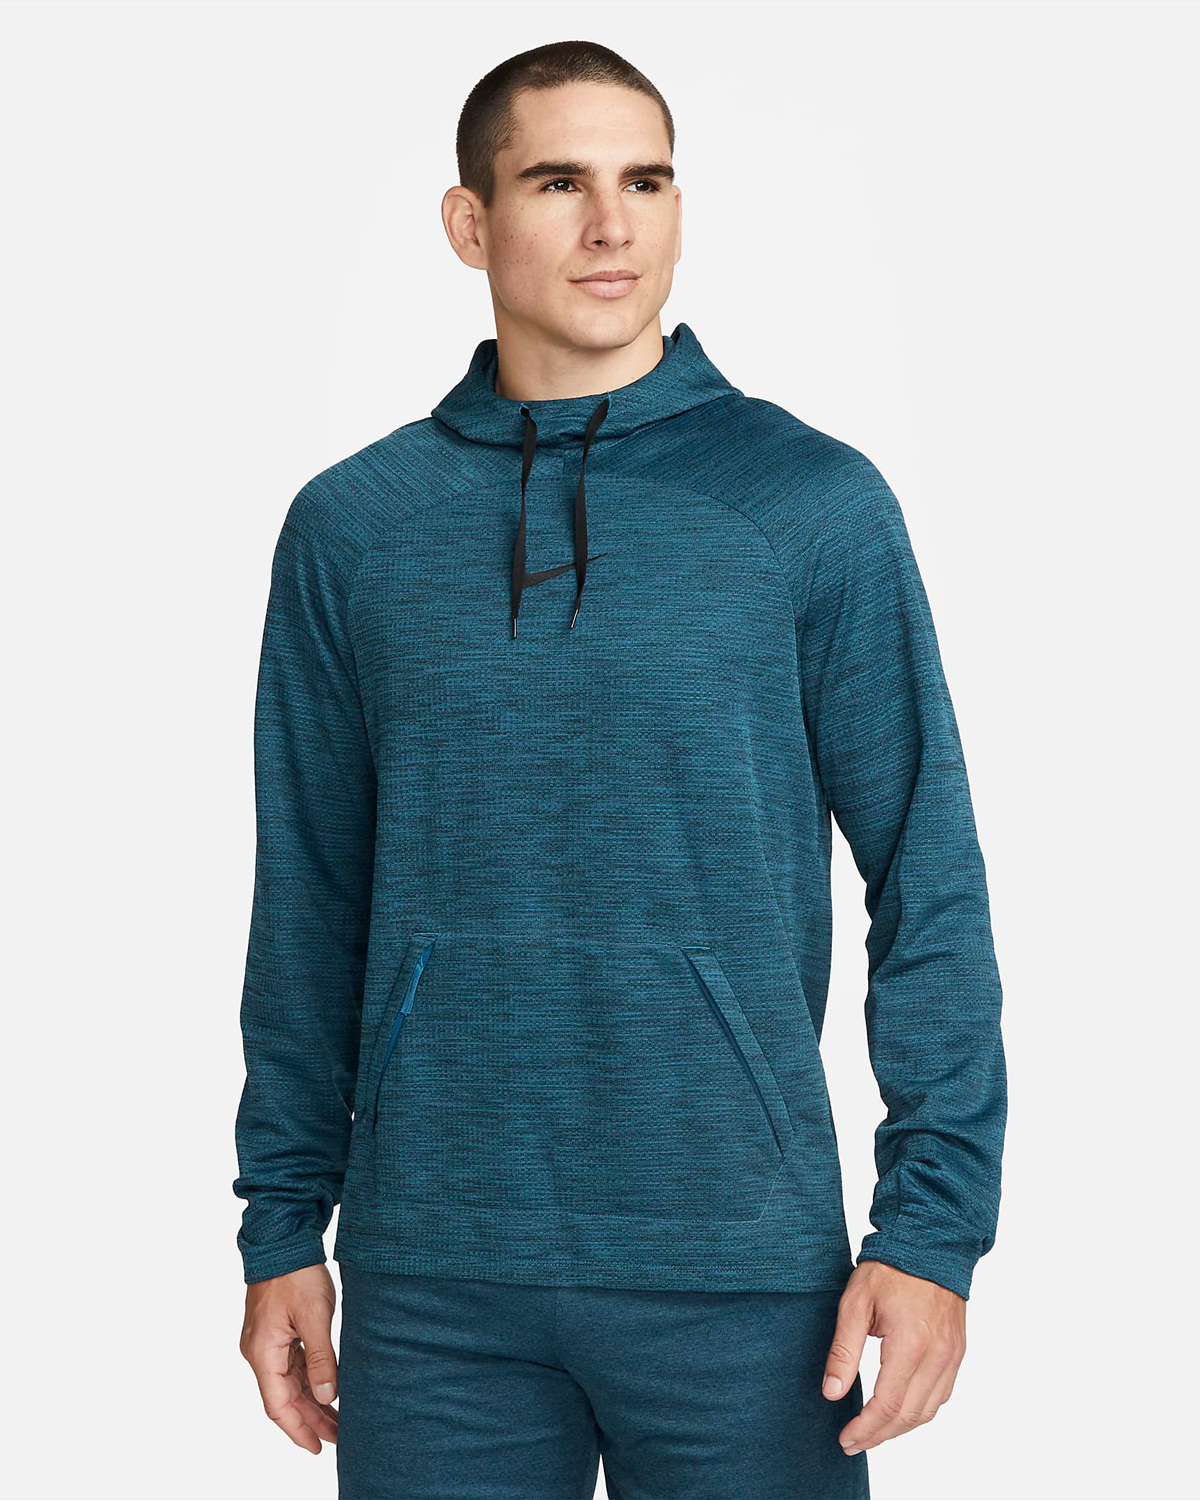 Nike-Academy-Long-Sleeve-Hooded-Top-Industrial-Blue-Black